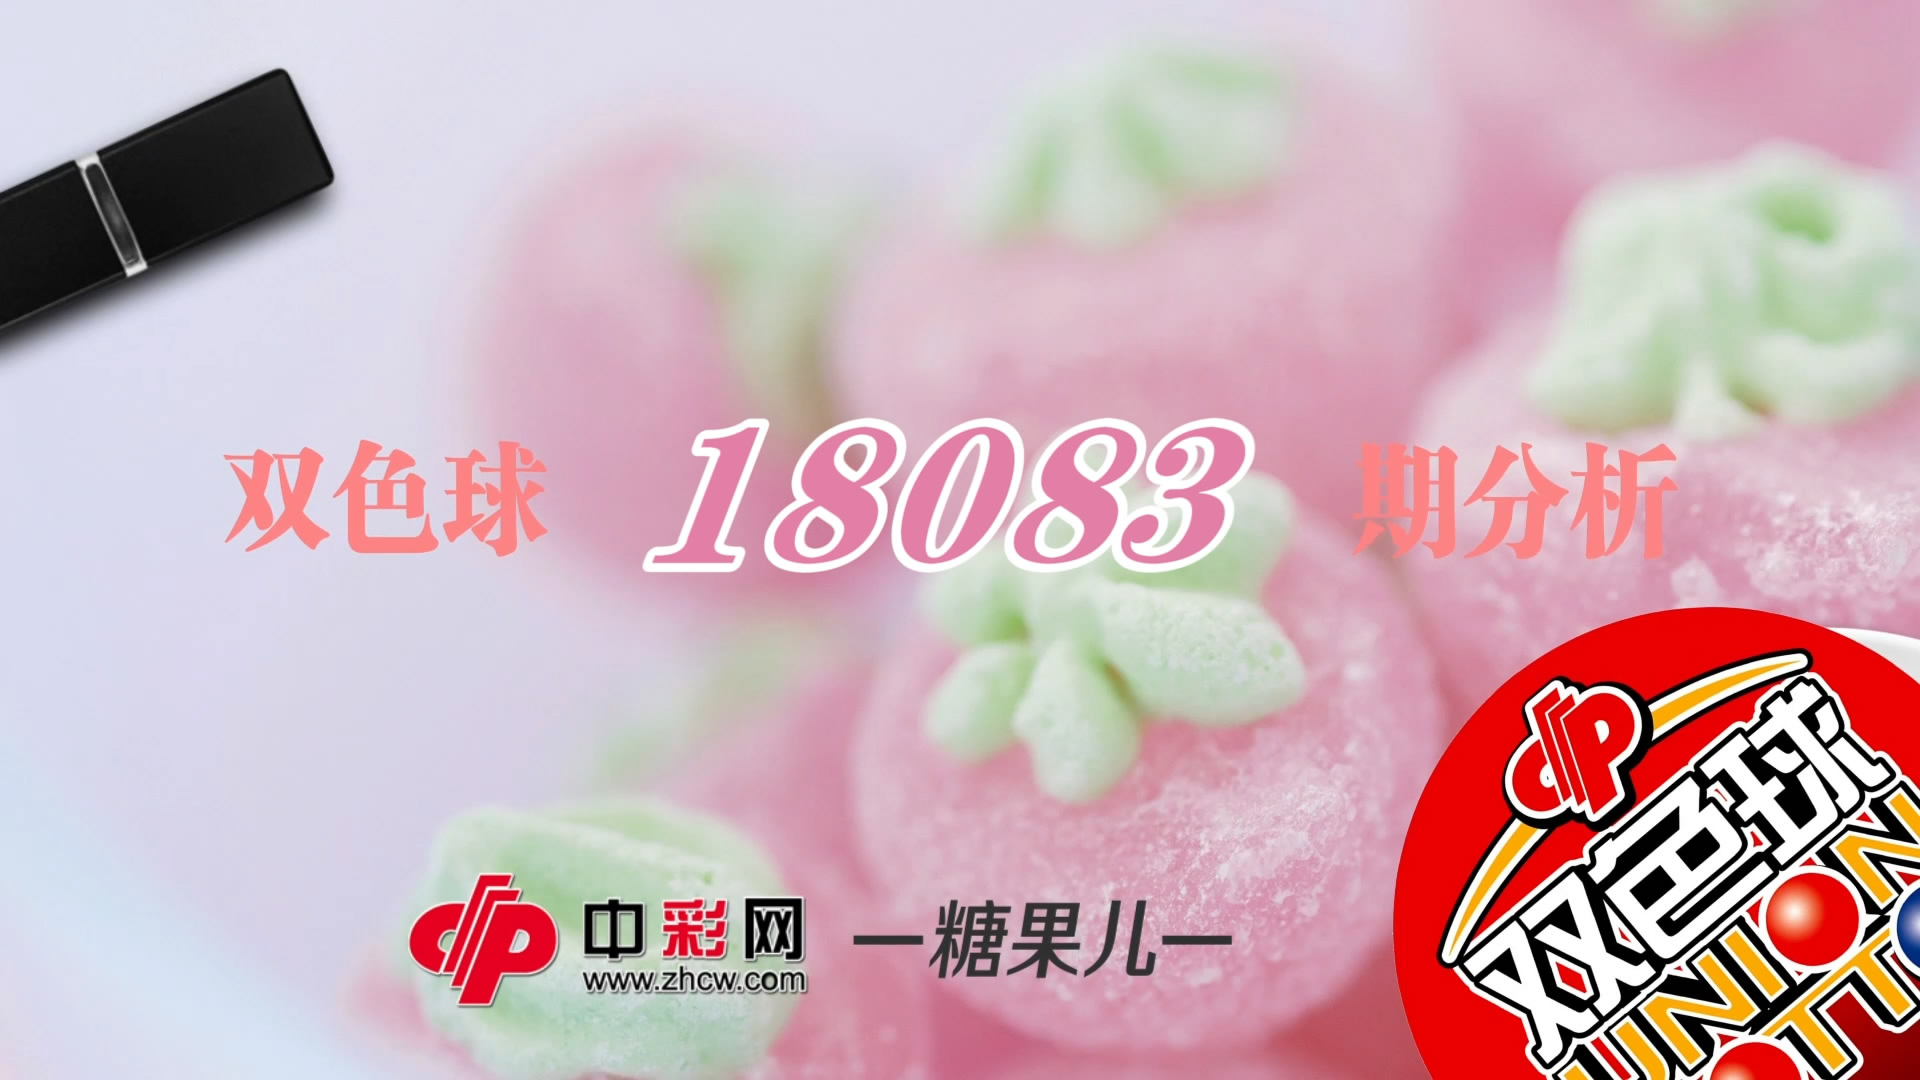 【中彩视频】糖果儿双色球第18083期